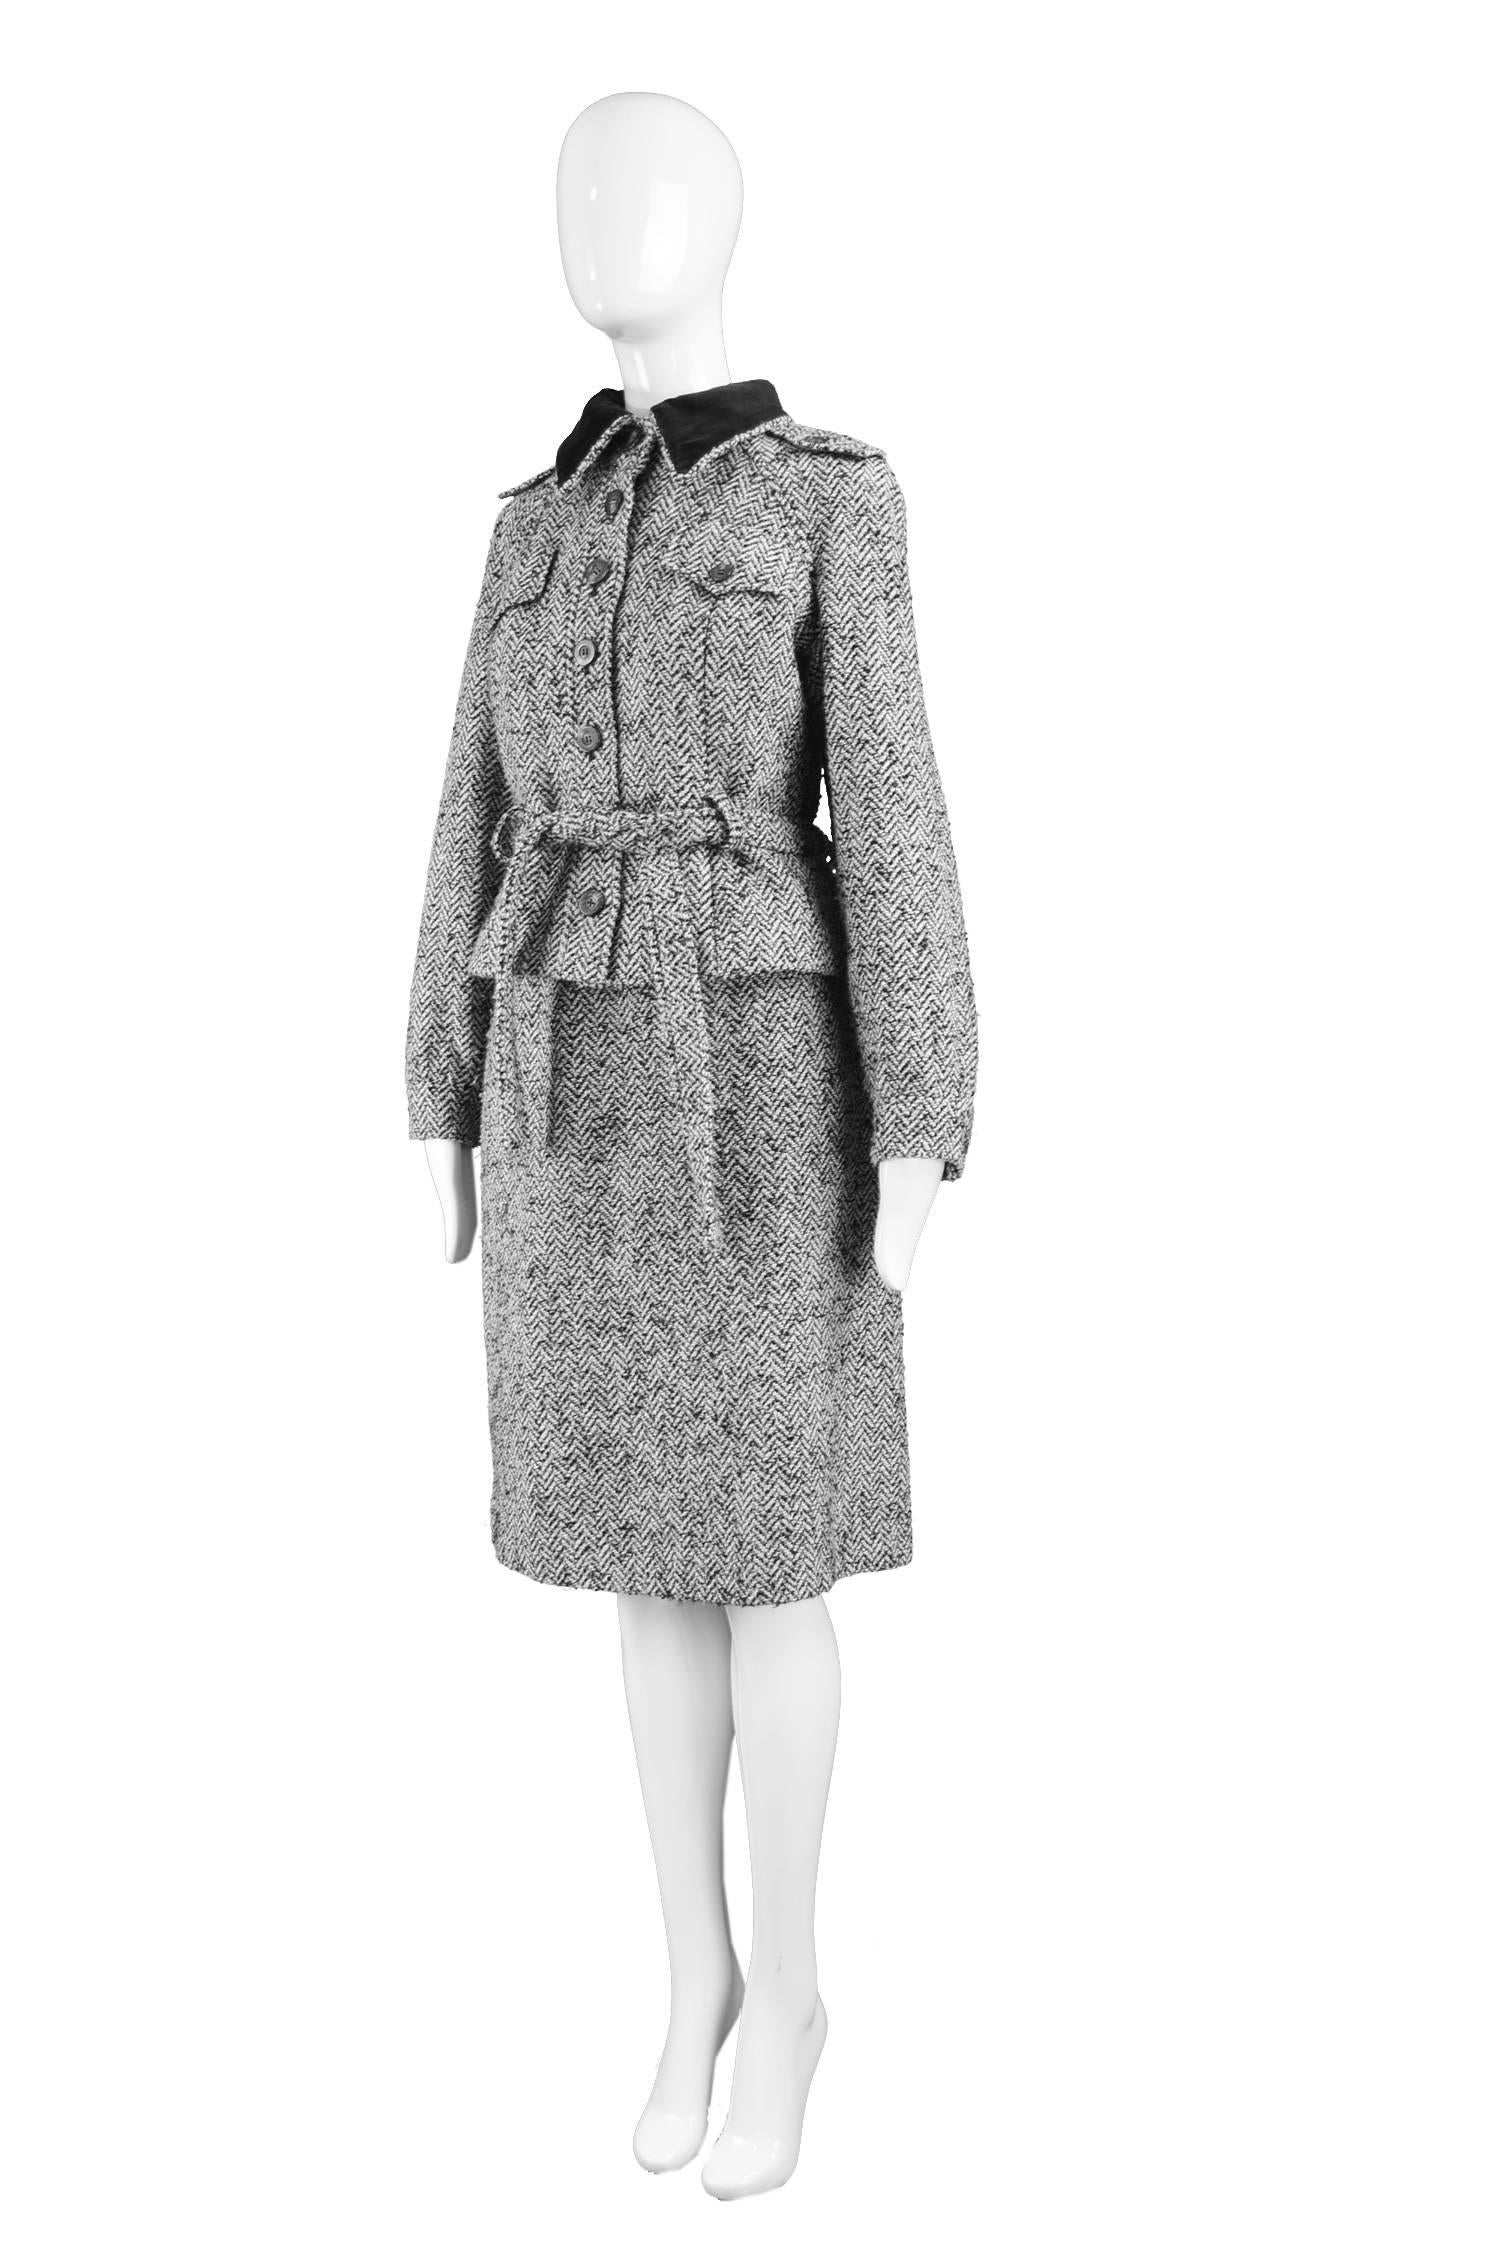 Louis Féraud Vintage Grey Wool Tweed Skirt Suit with Velvet Collar, 1970s 1